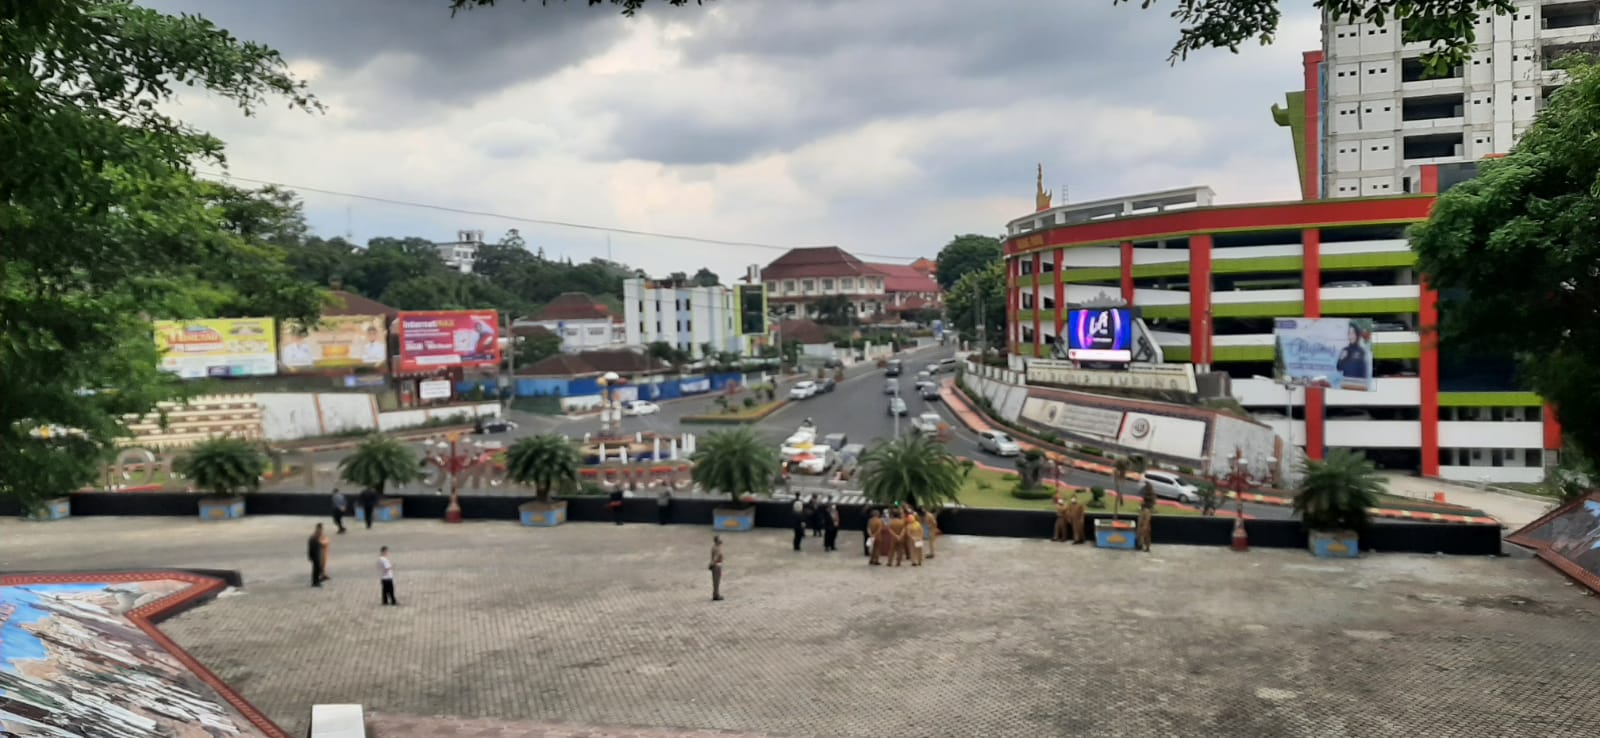 Dewan Beri Saran Terkait Rencana Pemkot Bandar Lampung Bangun JPO Pemkot-Al-Furqon